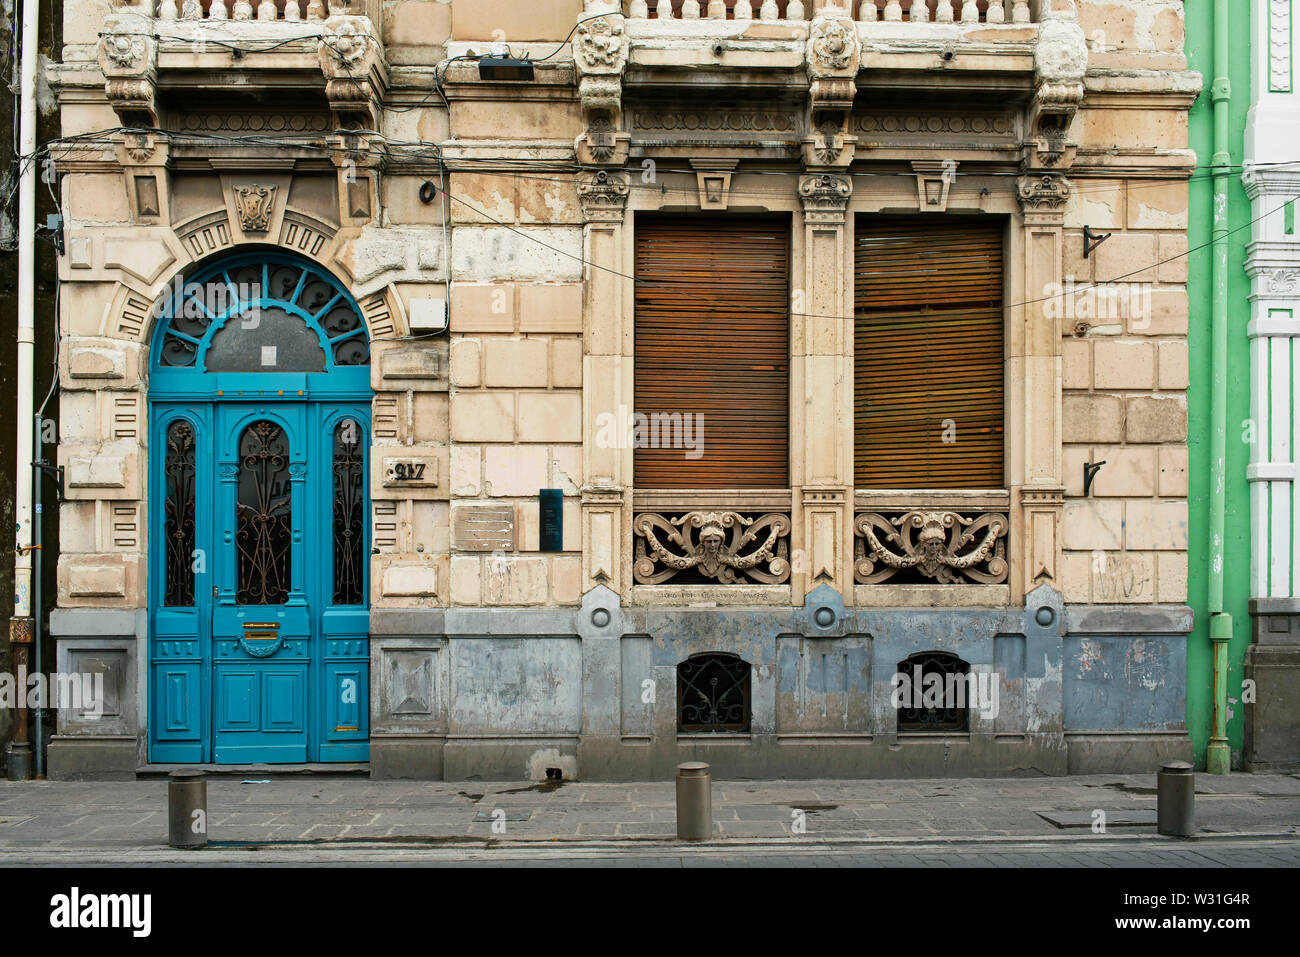 La façade de l'immeuble avec des détails de la période coloniale espagnole au centre-ville de Puebla, UNESCO World Heritage site. Puebla de Zaragoza, Mexique. Jun 2019 Banque D'Images